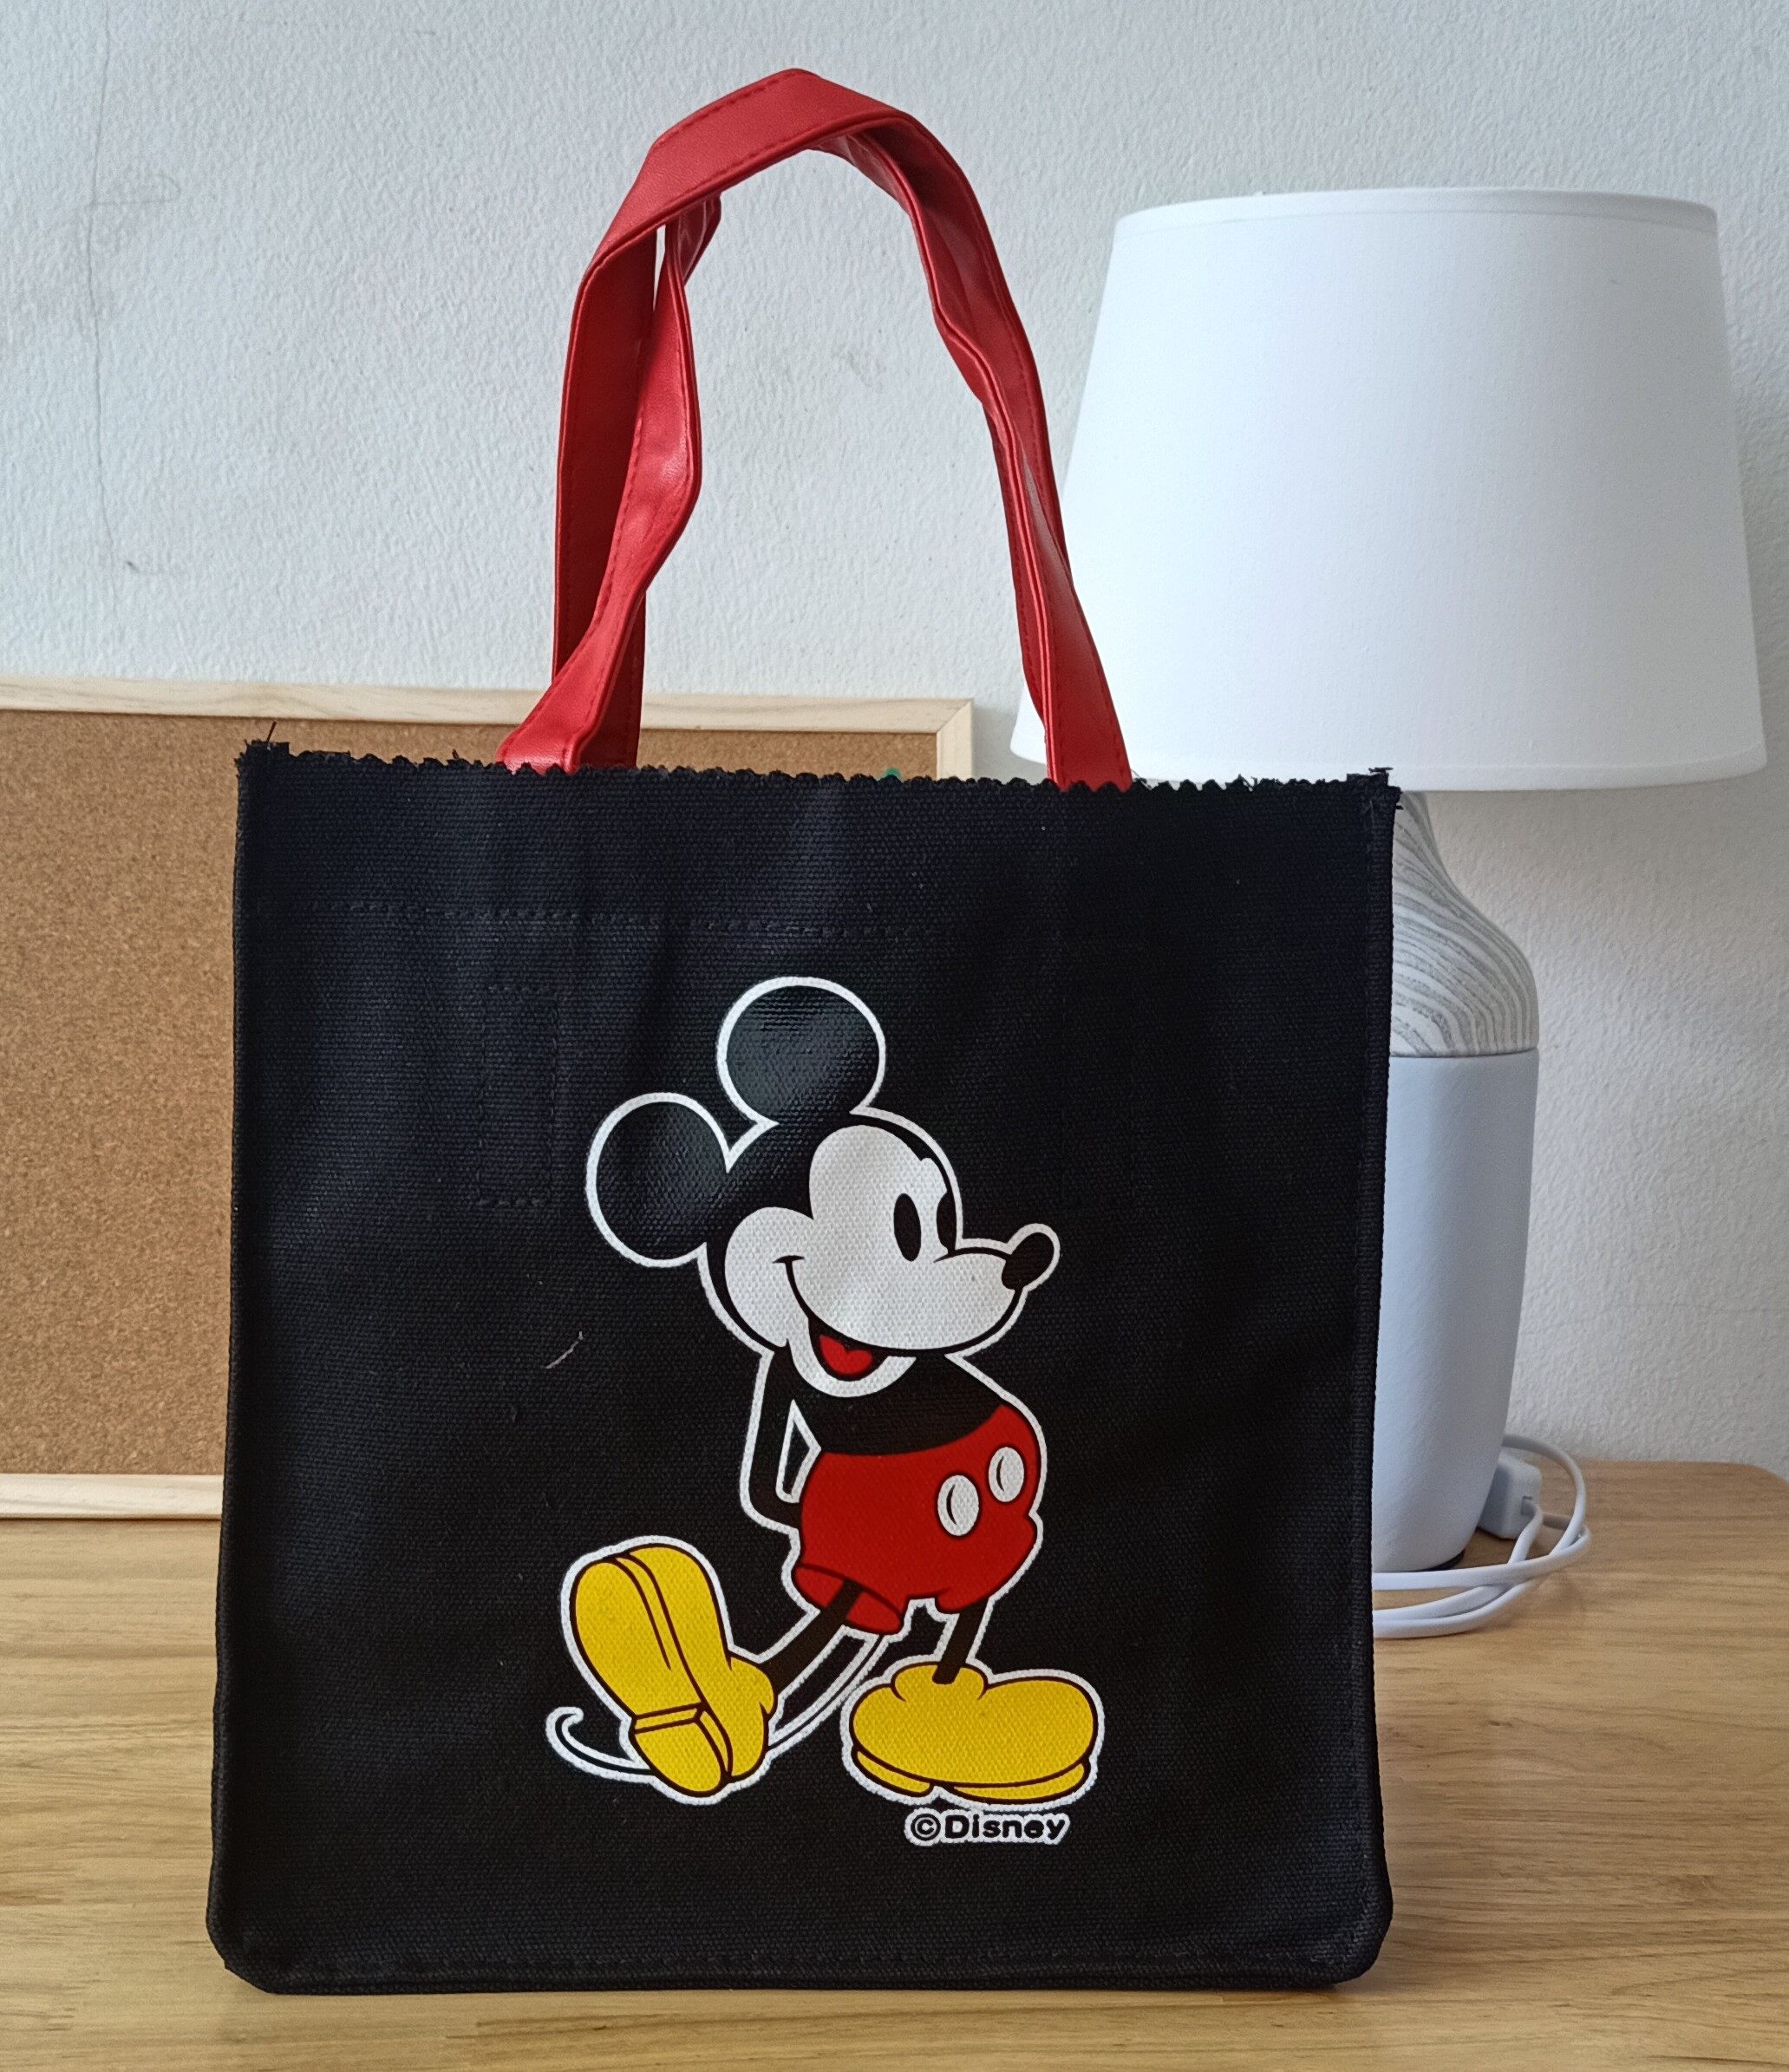 กระเป๋าถือ กระเป๋าสะพายข้าง กระเป๋าผ้าสายหนัง กระเป๋า Mickey Mouse สกรีนหน้าสองด้านน่ารัก ขนาด กว้าง9ซม. ยาว25ซม. สูง26.5ซม.